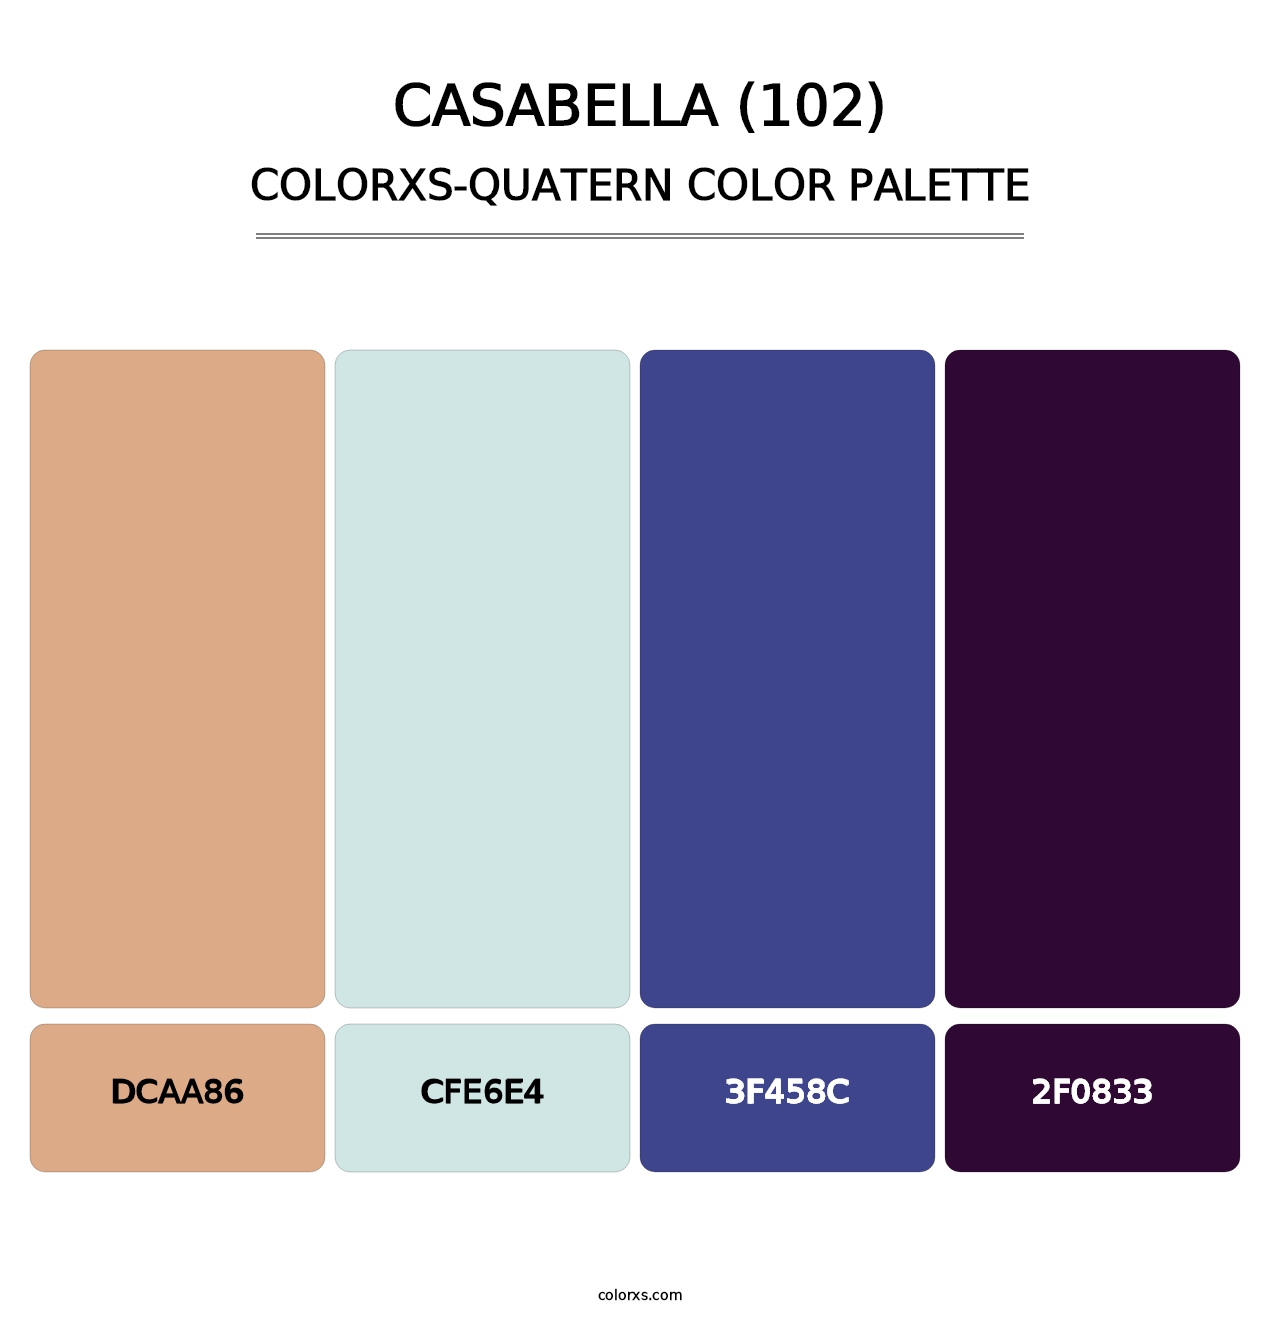 Casabella (102) - Colorxs Quatern Palette